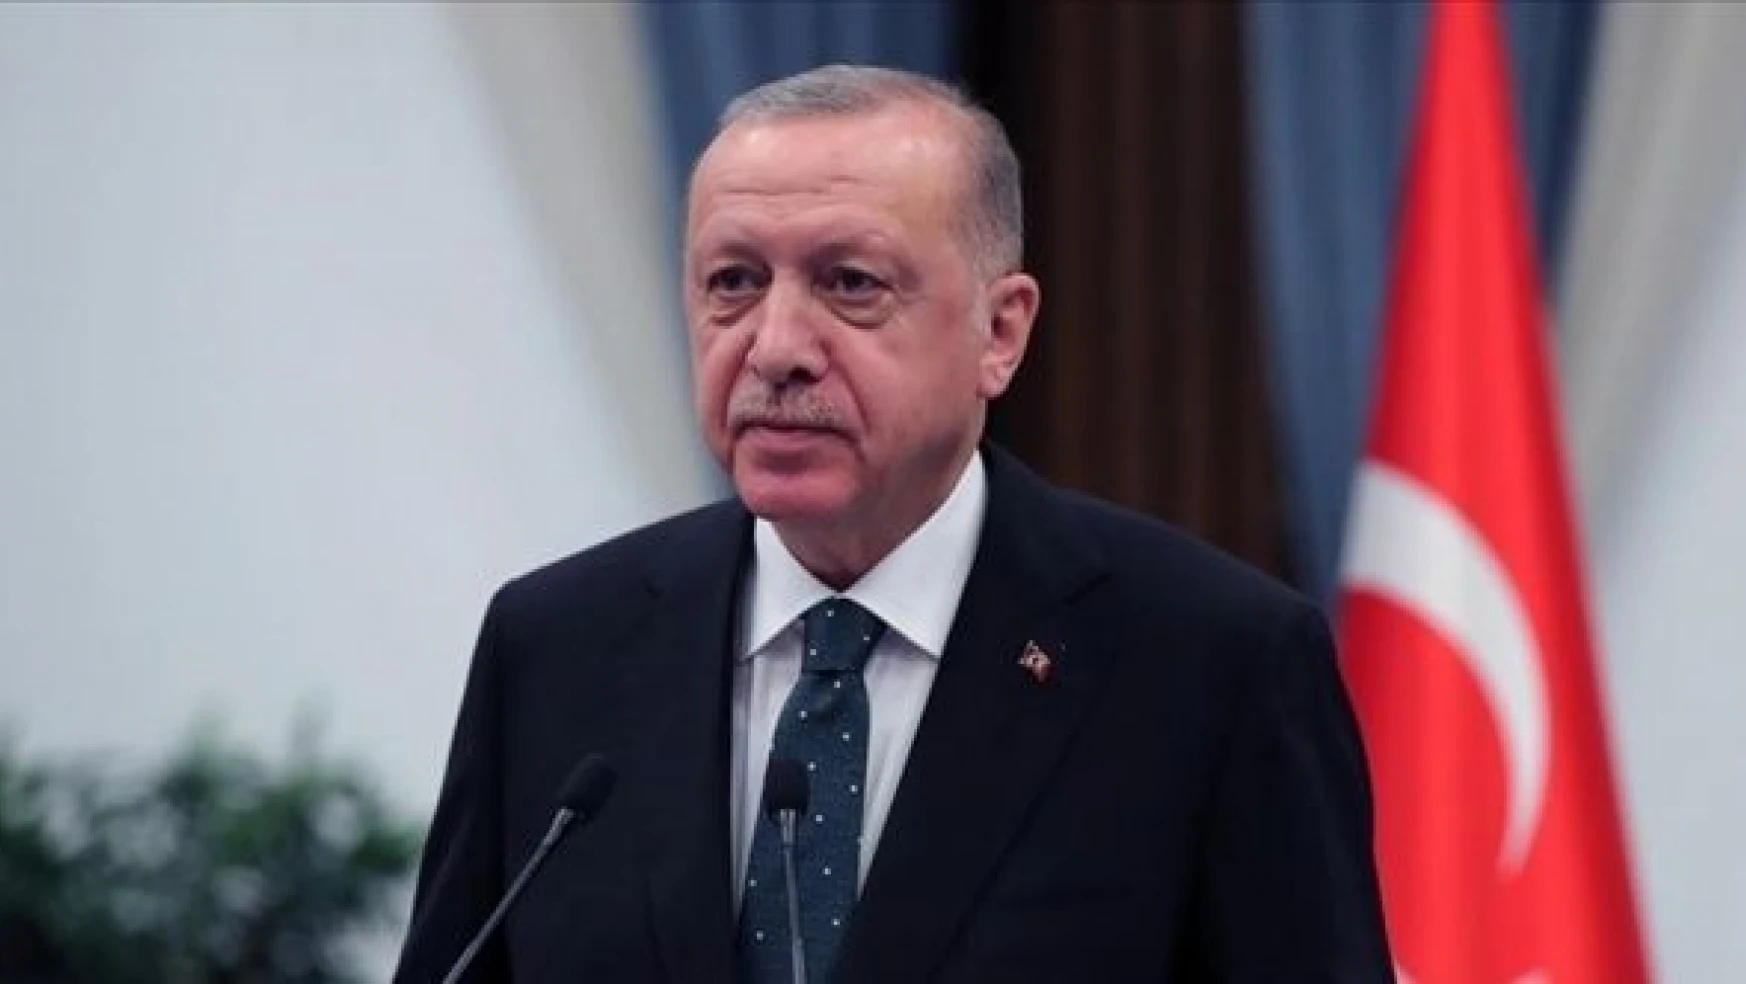 Cumhurbaşkanı Erdoğan'dan Özgür Özel'e 250 bin liralık tazminat davası